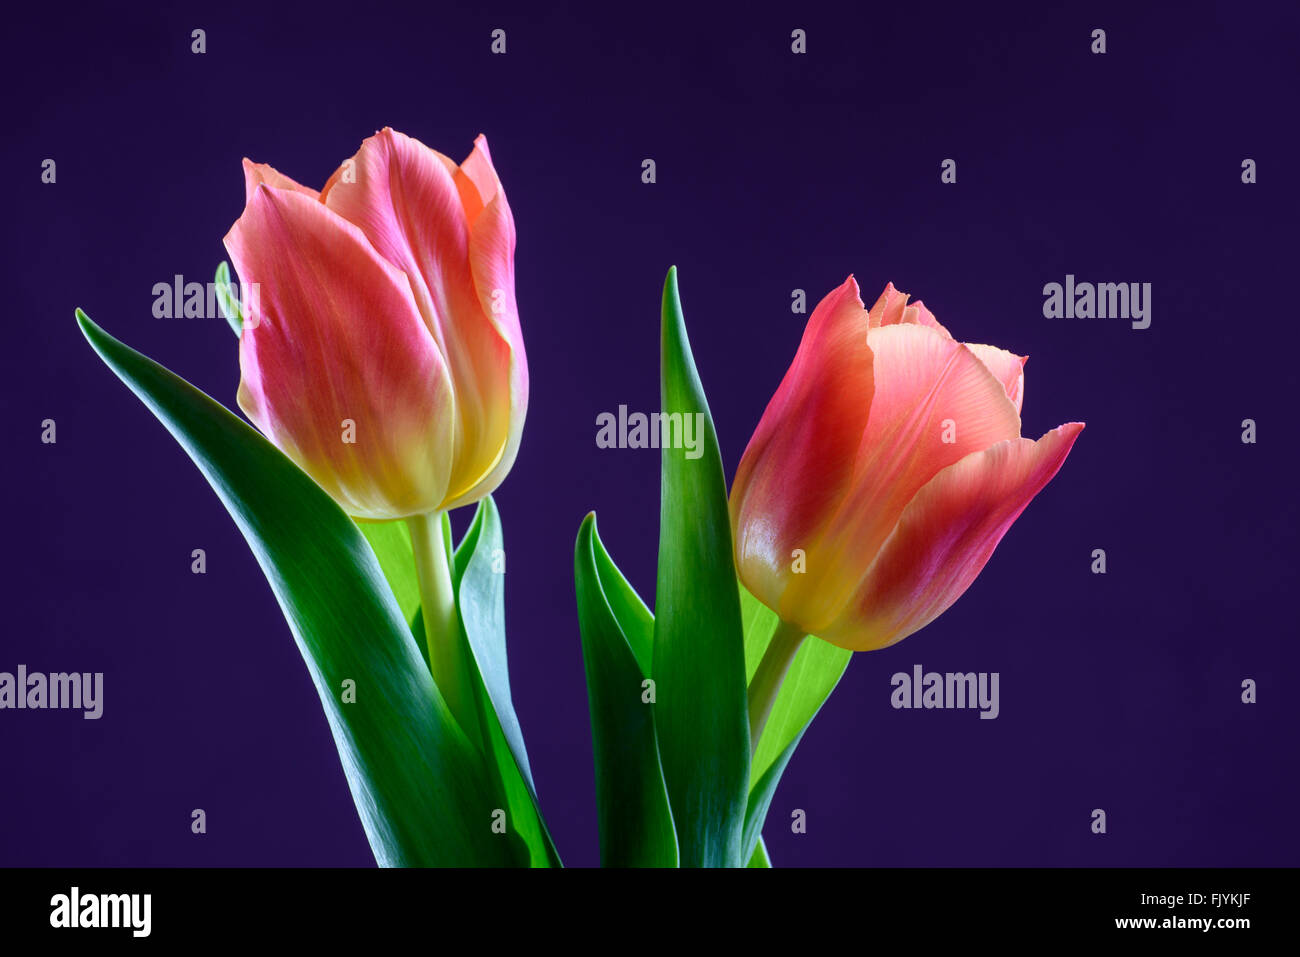 Une paire de fleurs tulipes orange contre un fond violet Banque D'Images